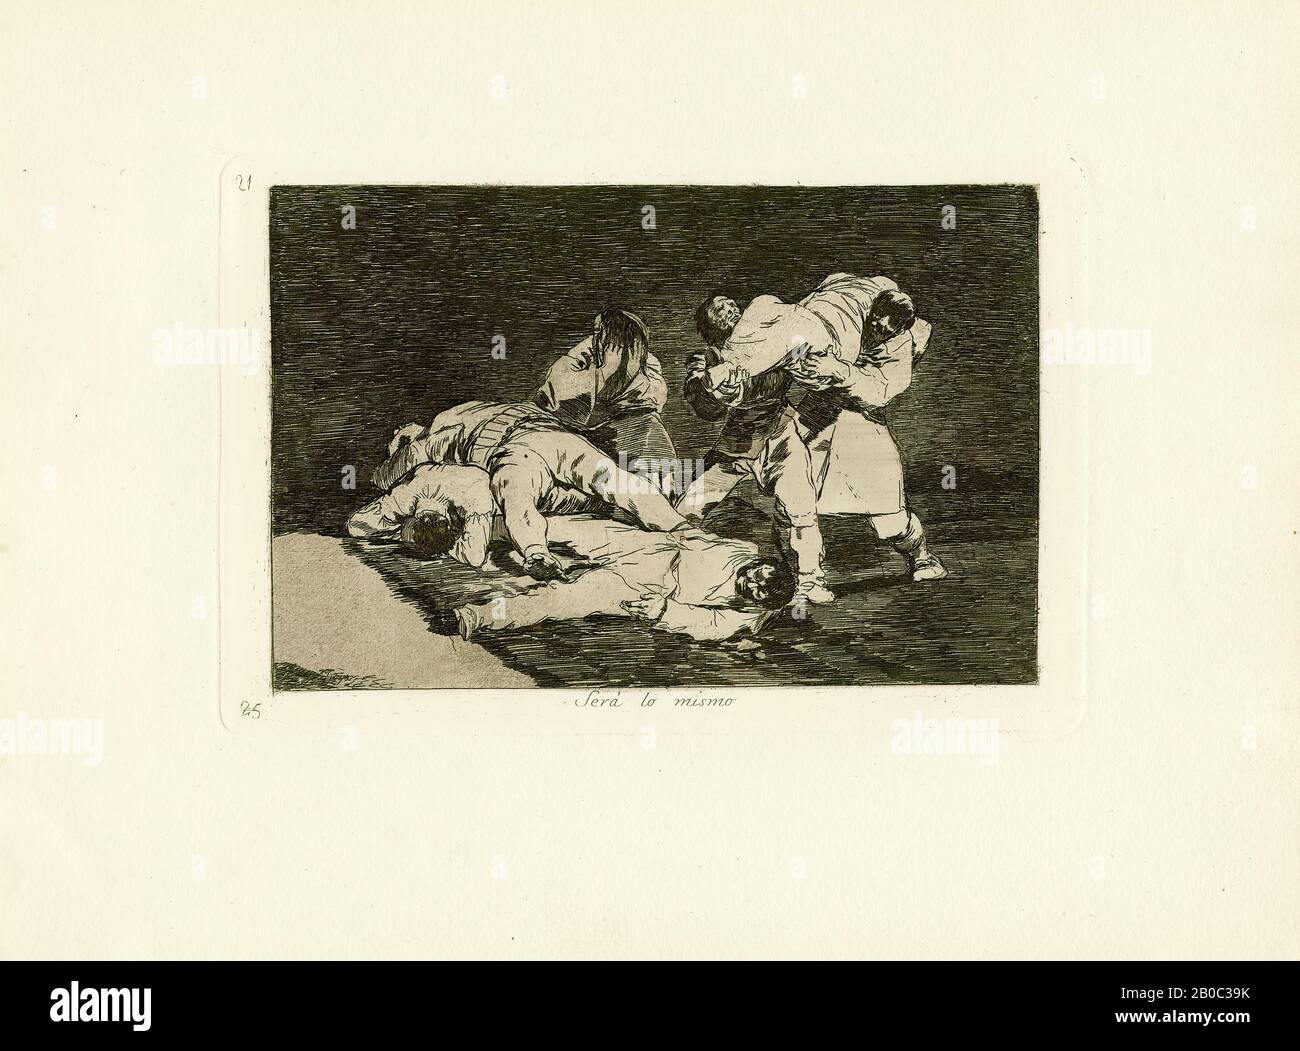 Francisco José, y Lucientes de Goya, Será lo mismo (Ce sera le même.), CA. 1815, gravure avec aquitt sur papier, 9 3/4 po. x 13 9/16 po. (24,77 cm x 34,45 cm), Será lo mismo est une plaque de la série des désastres de la guerre de Goya, produite pendant les guerres péninsulaires (1808-14) qui ont ravagé l'Espagne pendant le règne napoléonien de l'Europe. L'imprimé révèle une scène horrible que Goya aurait pu voir à maintes reprises au cours de ces années, des bourres transportant des cadavres, bien que le manque de symbolisme spécifique ou de contexte historique suggère un thème plus universel. La capacité unique de Goya à distiller une telle moyenne intemporelle Banque D'Images